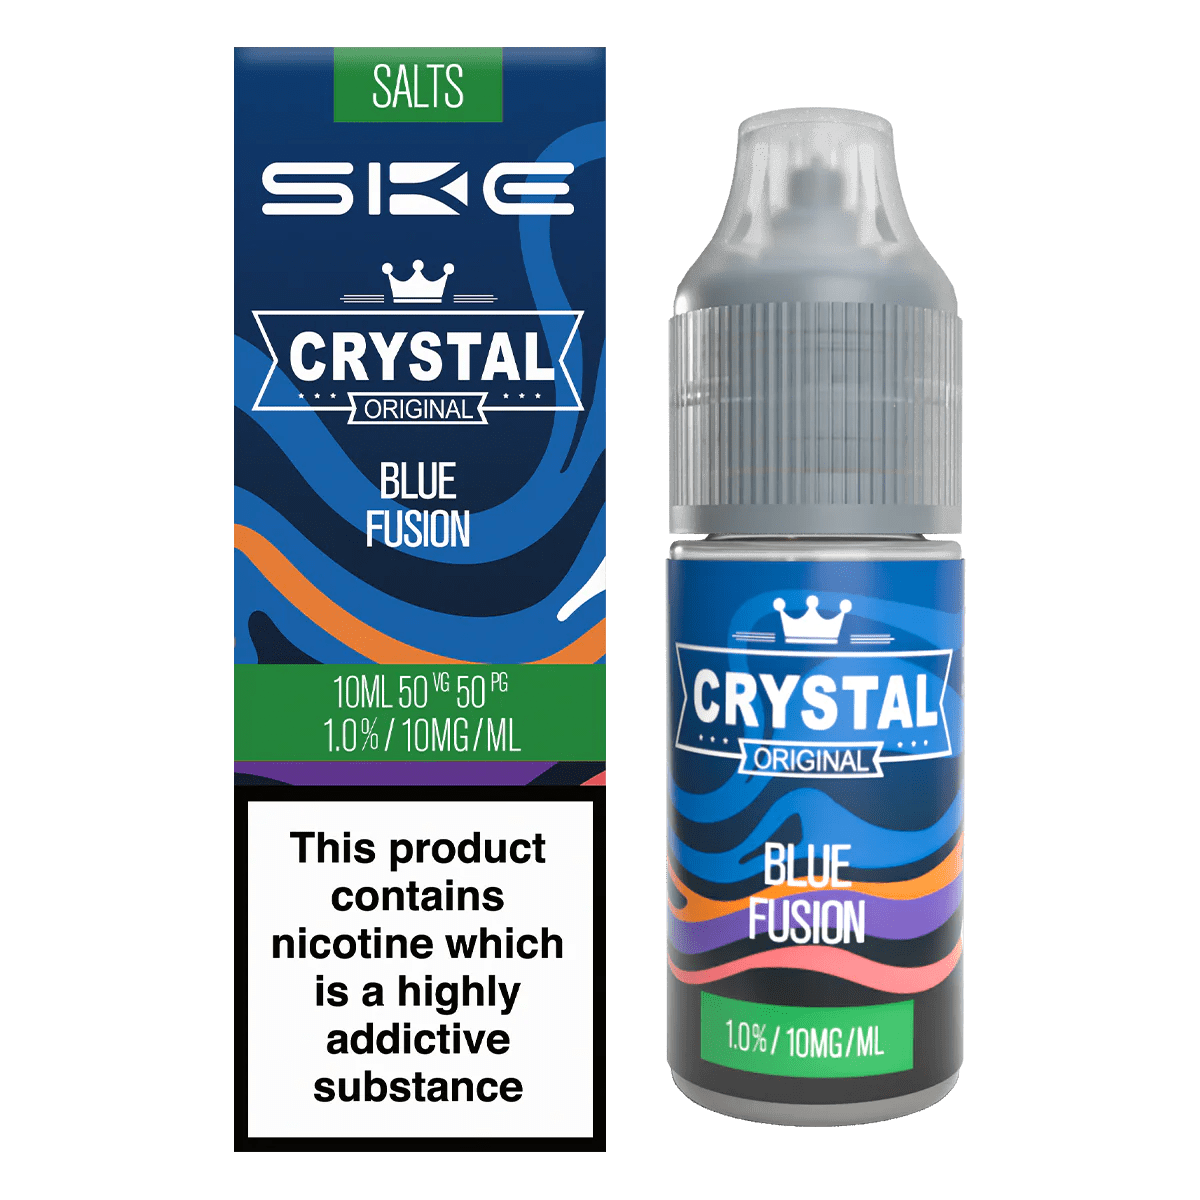 SKE Crystal Nic Salt Blue Fusion (20mg) - EUK